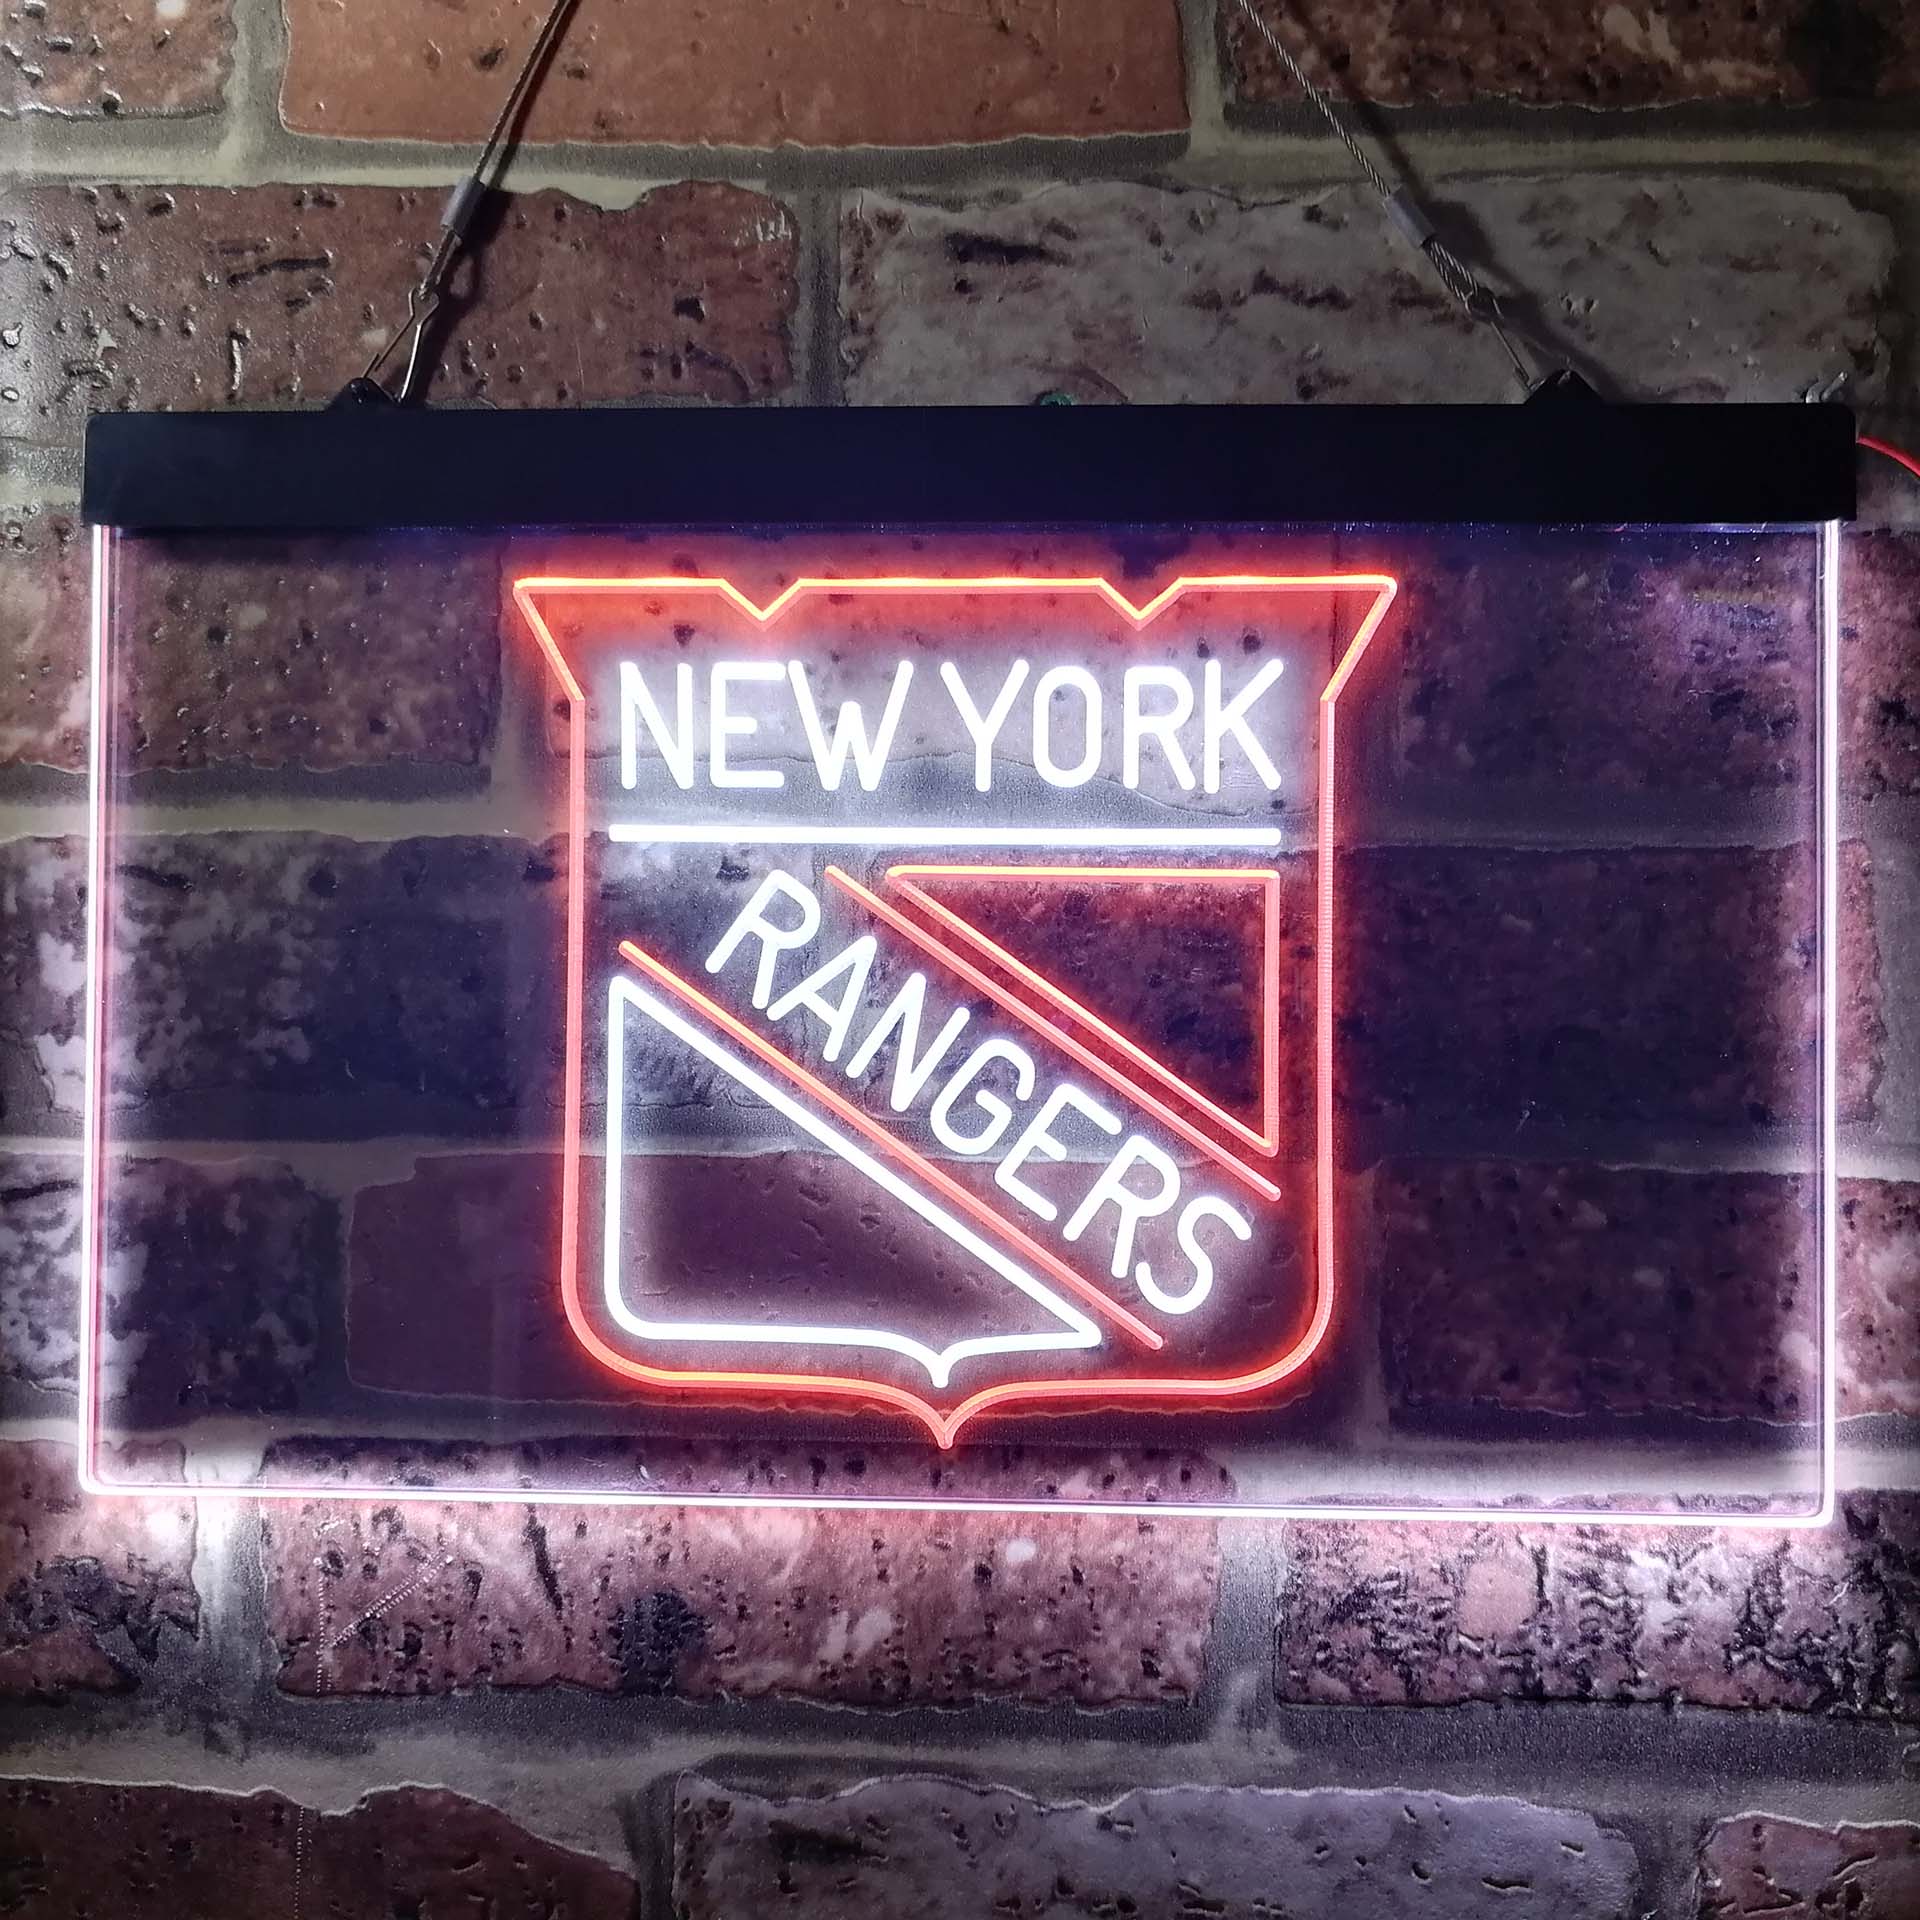 New York Sport Team Rangers LED Neon Sign